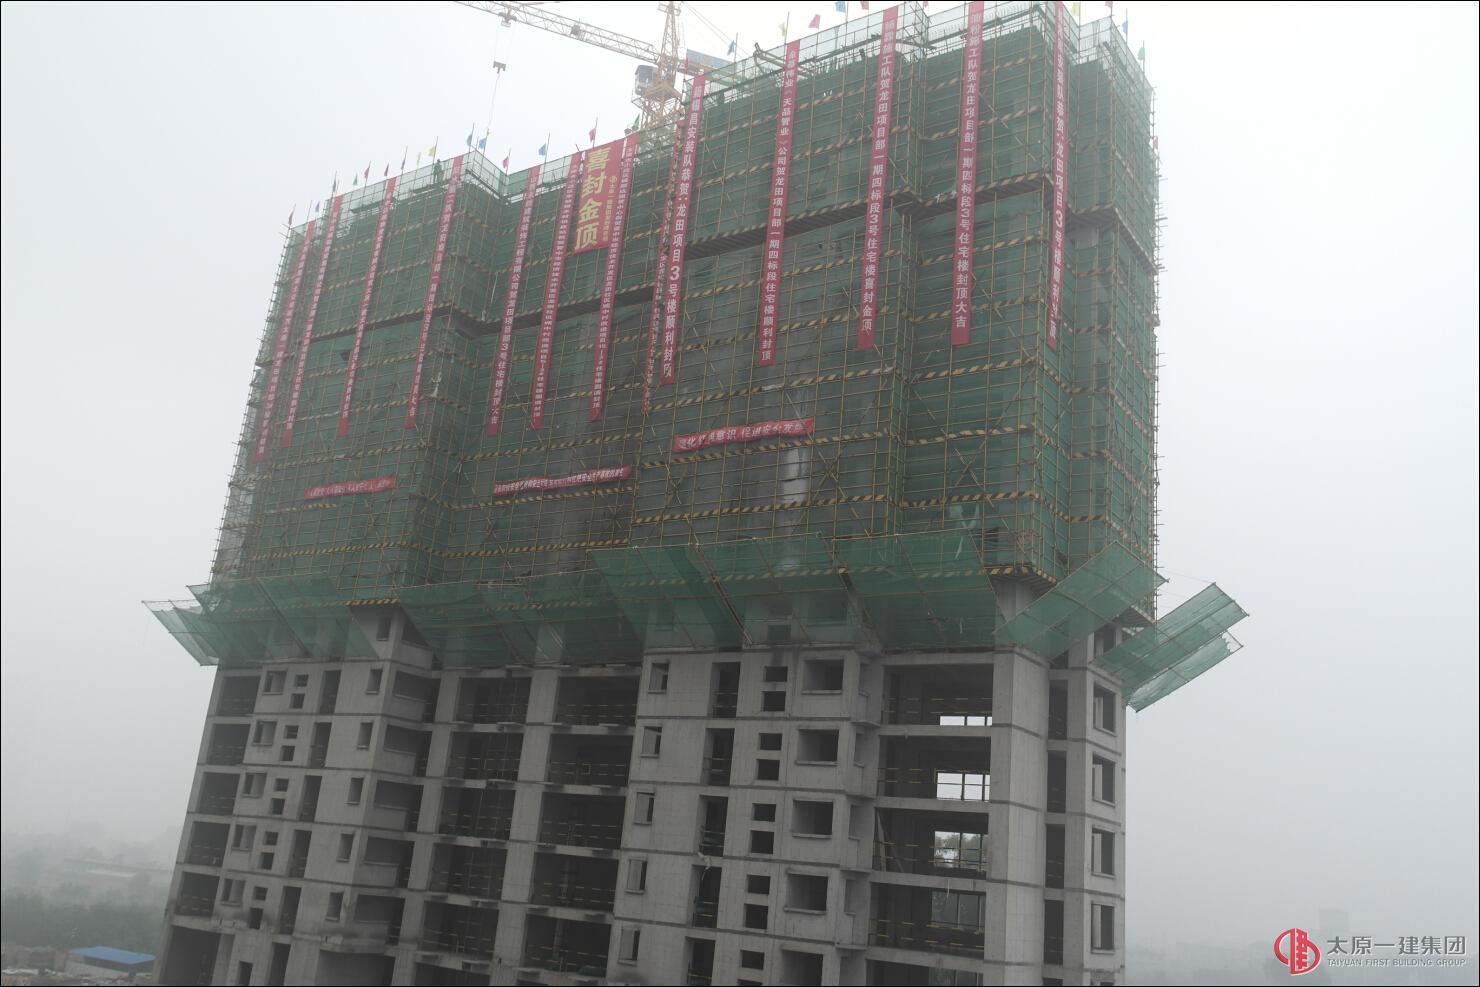 晋中龙田项目15地块3#住宅楼工程主体施工顺利封顶